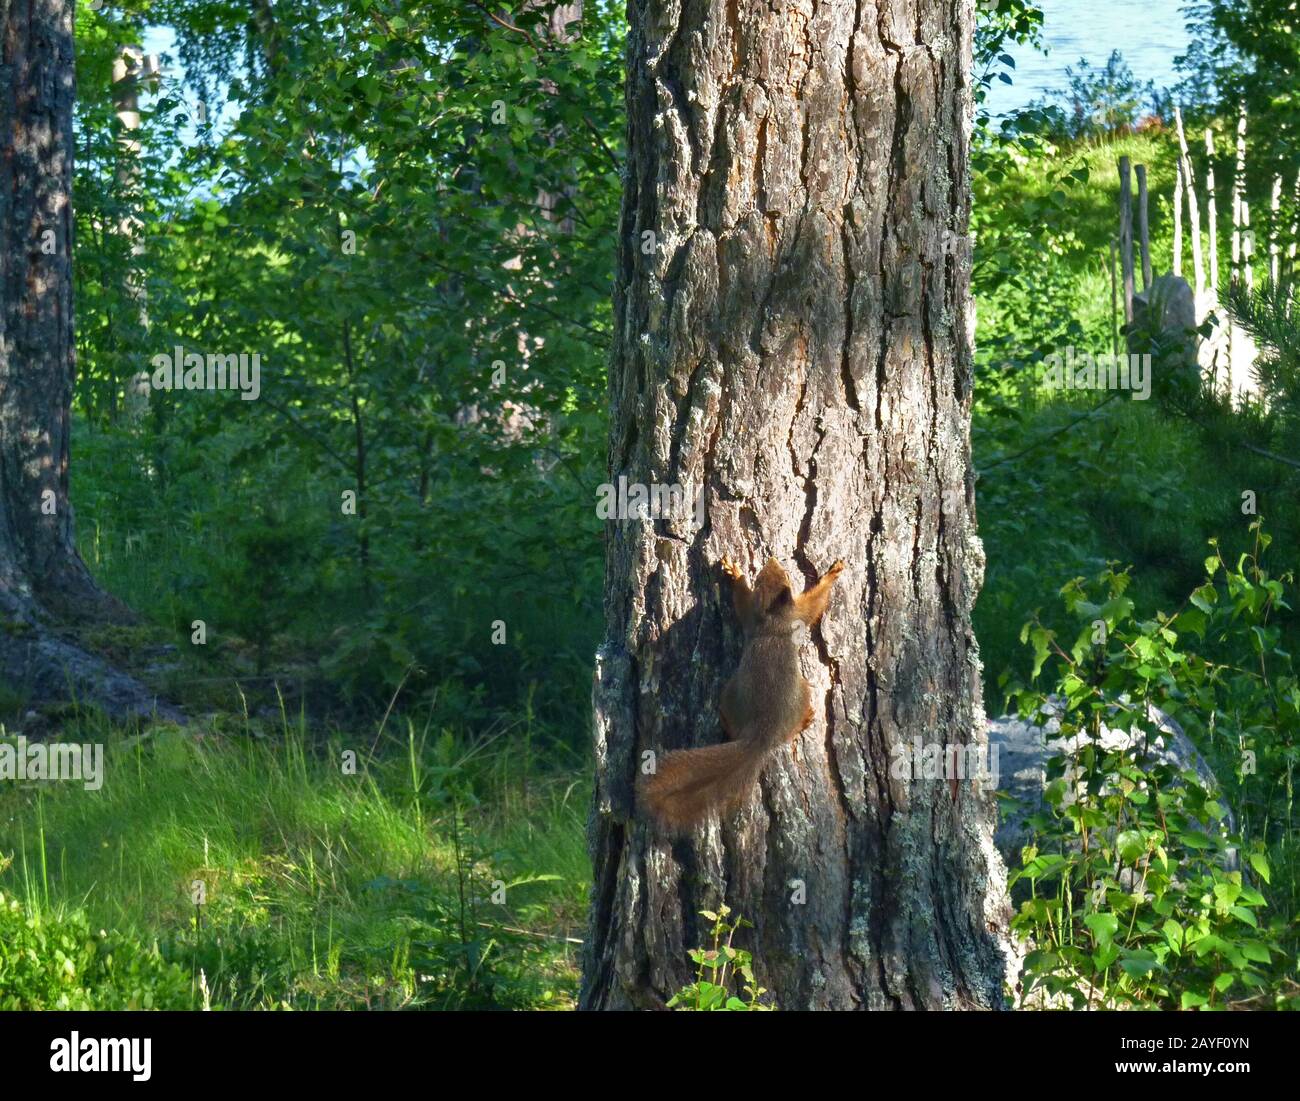 Im Quellwald klettern Eichhörnchen an einem Baumstamm nach oben Stockfoto